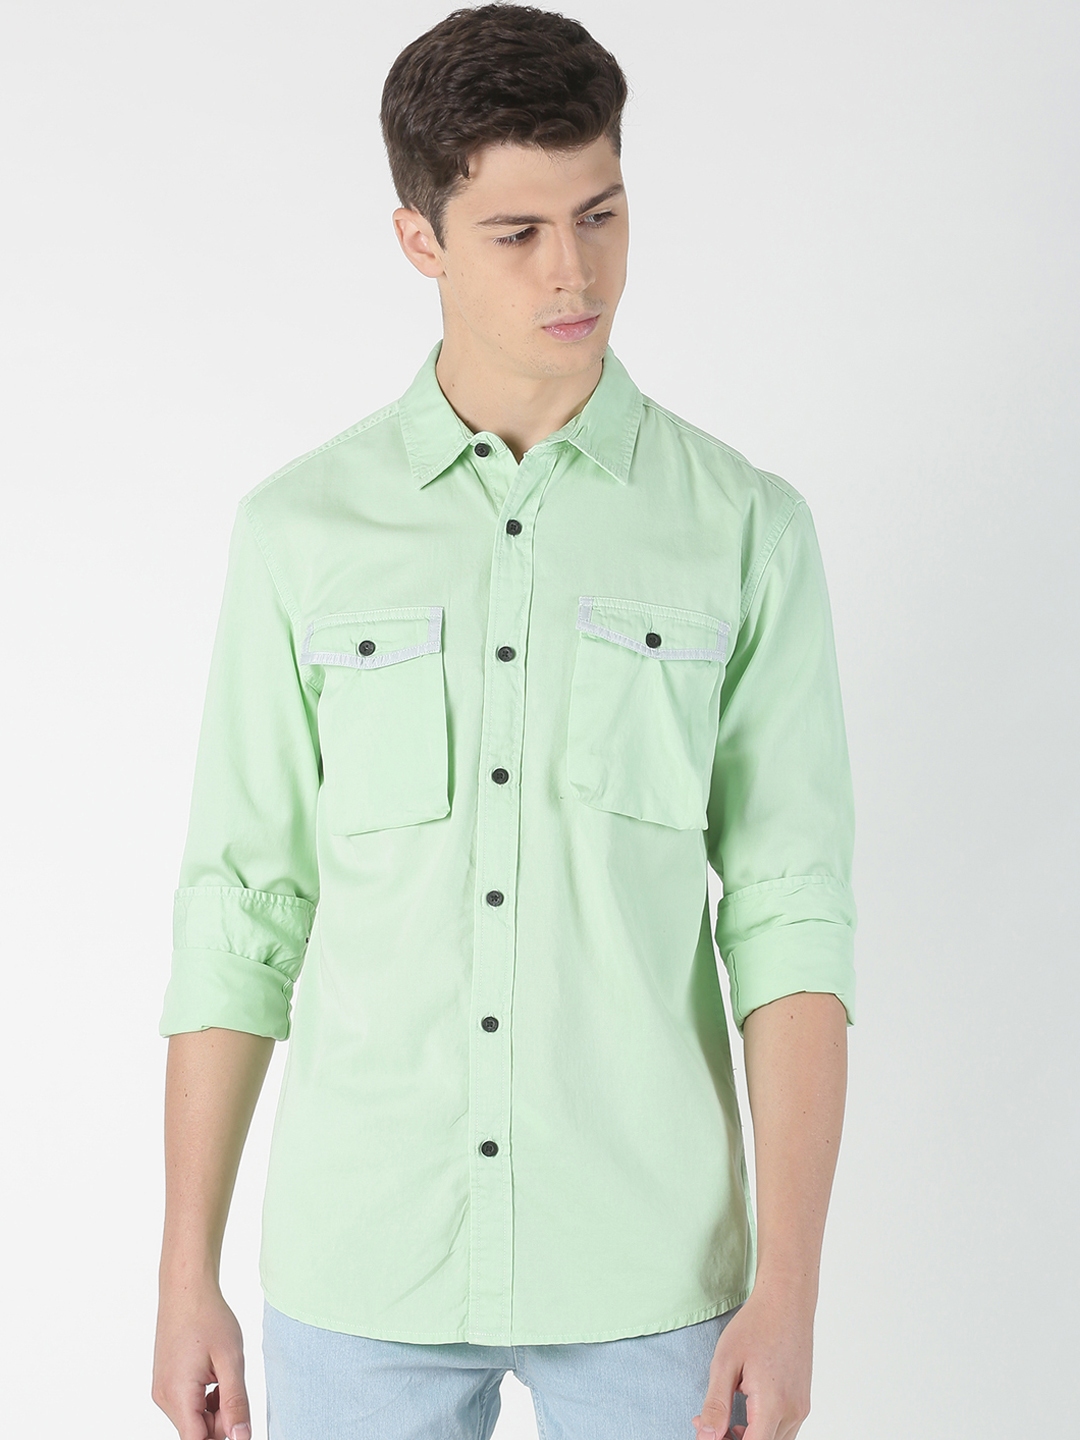 mint green mens shirt